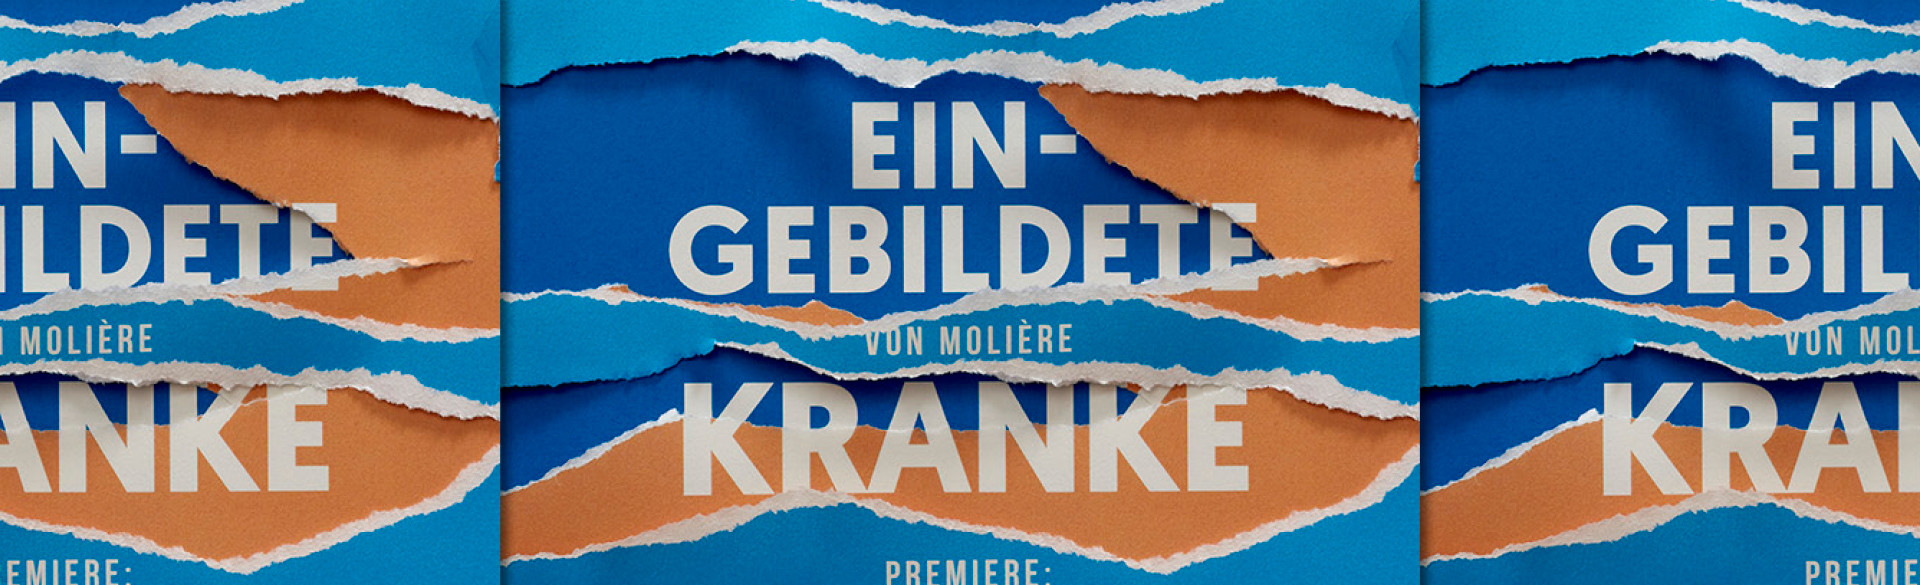 Banner "Der eingebildete Kranke", © Theater Heilbronn